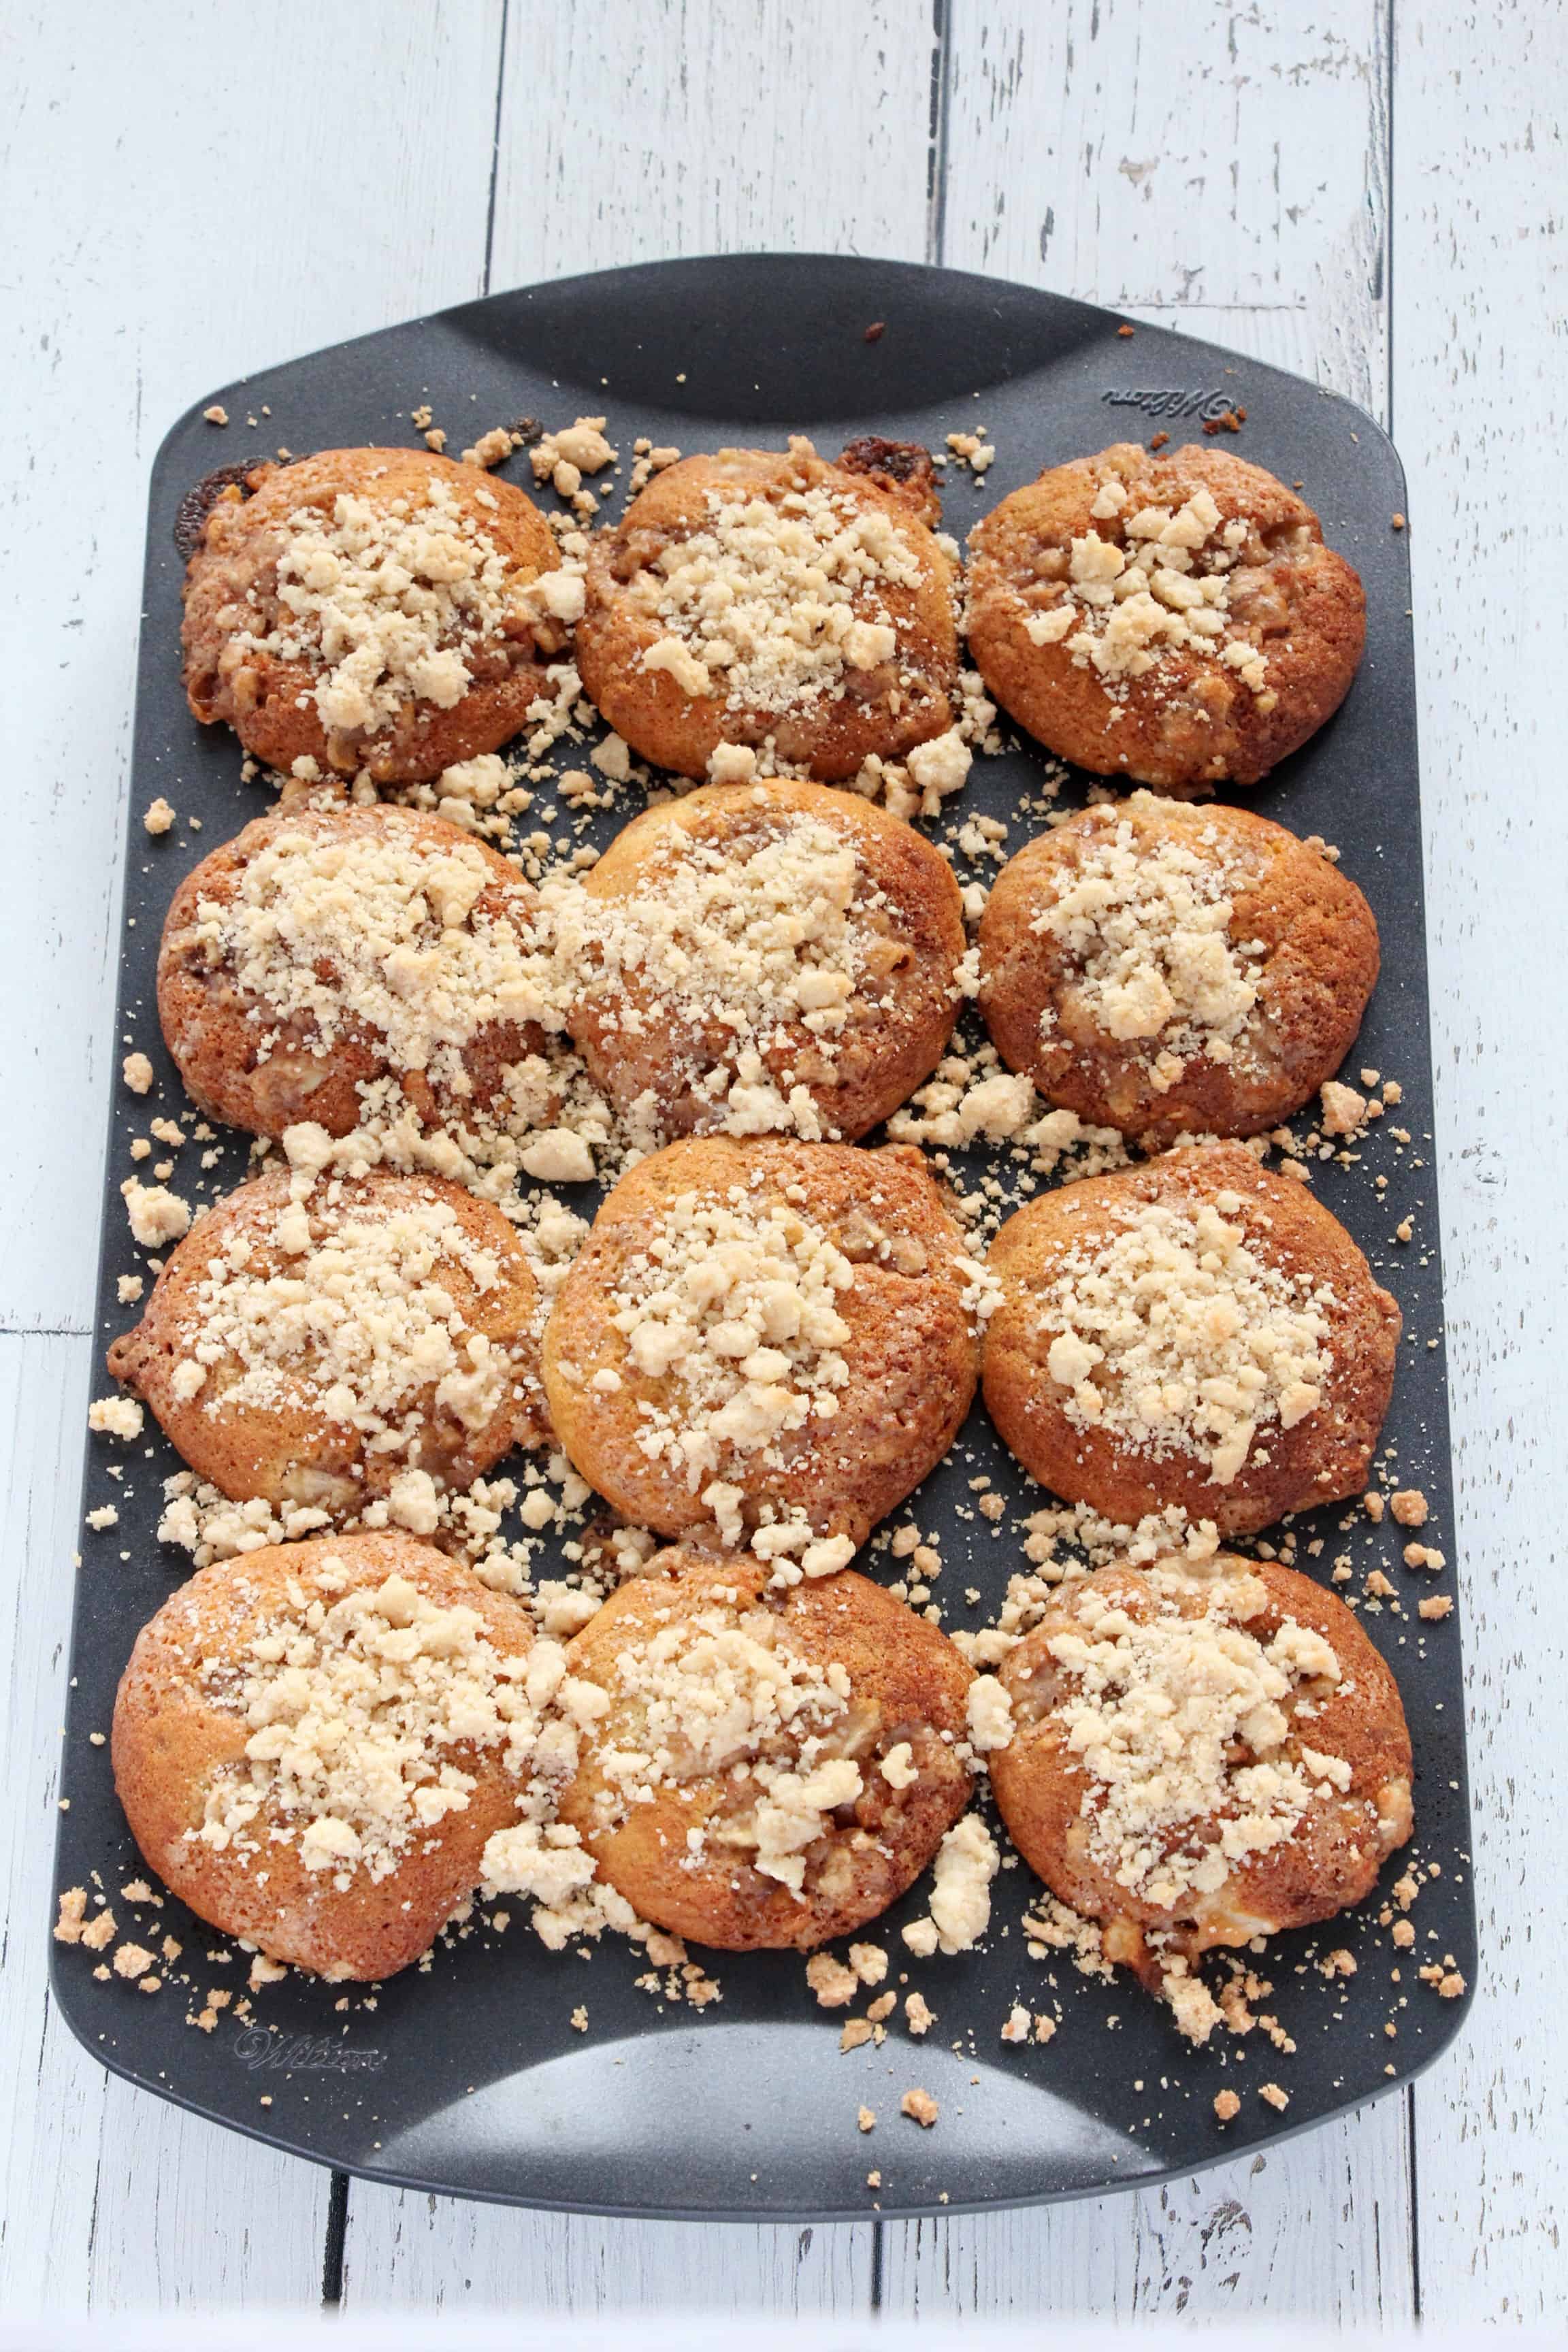 delicious Apple streusel muffin recipe